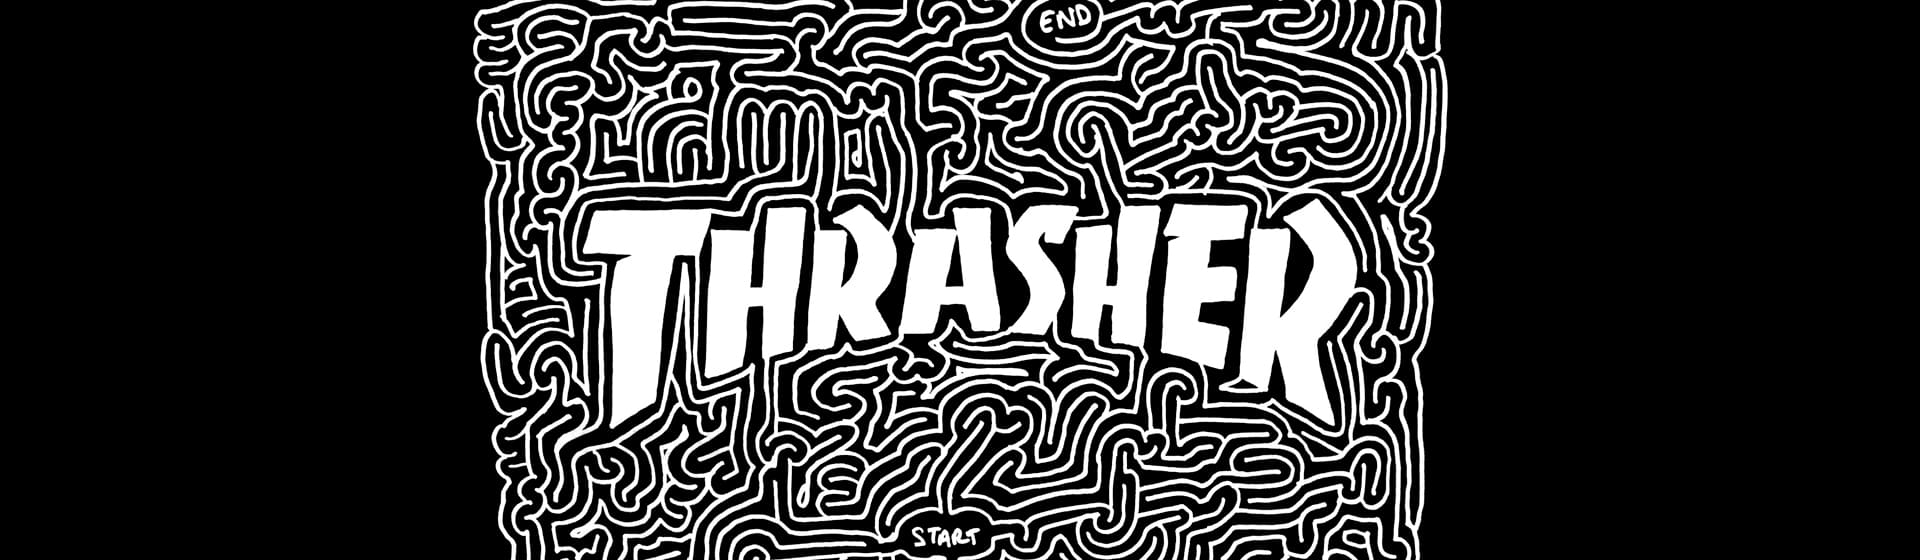 Thrasher - Мерч и одежда с атрибутикой